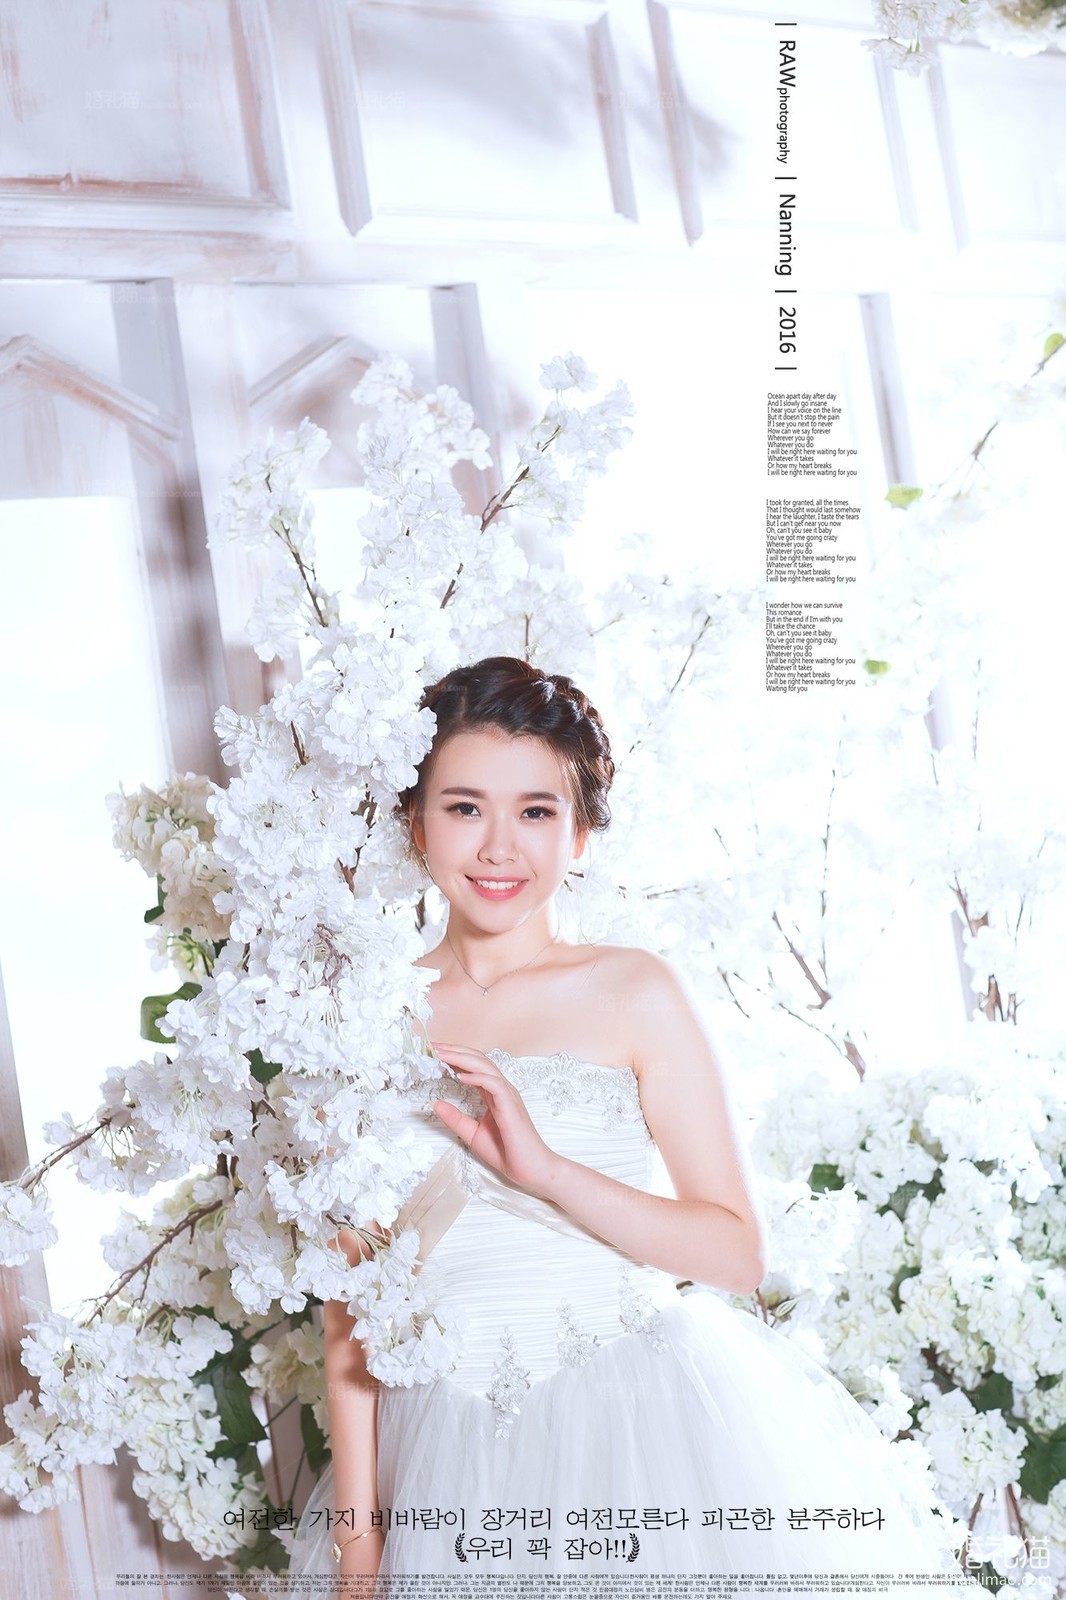 2017年7月广州结婚照,,茂名婚纱照,婚纱照图片